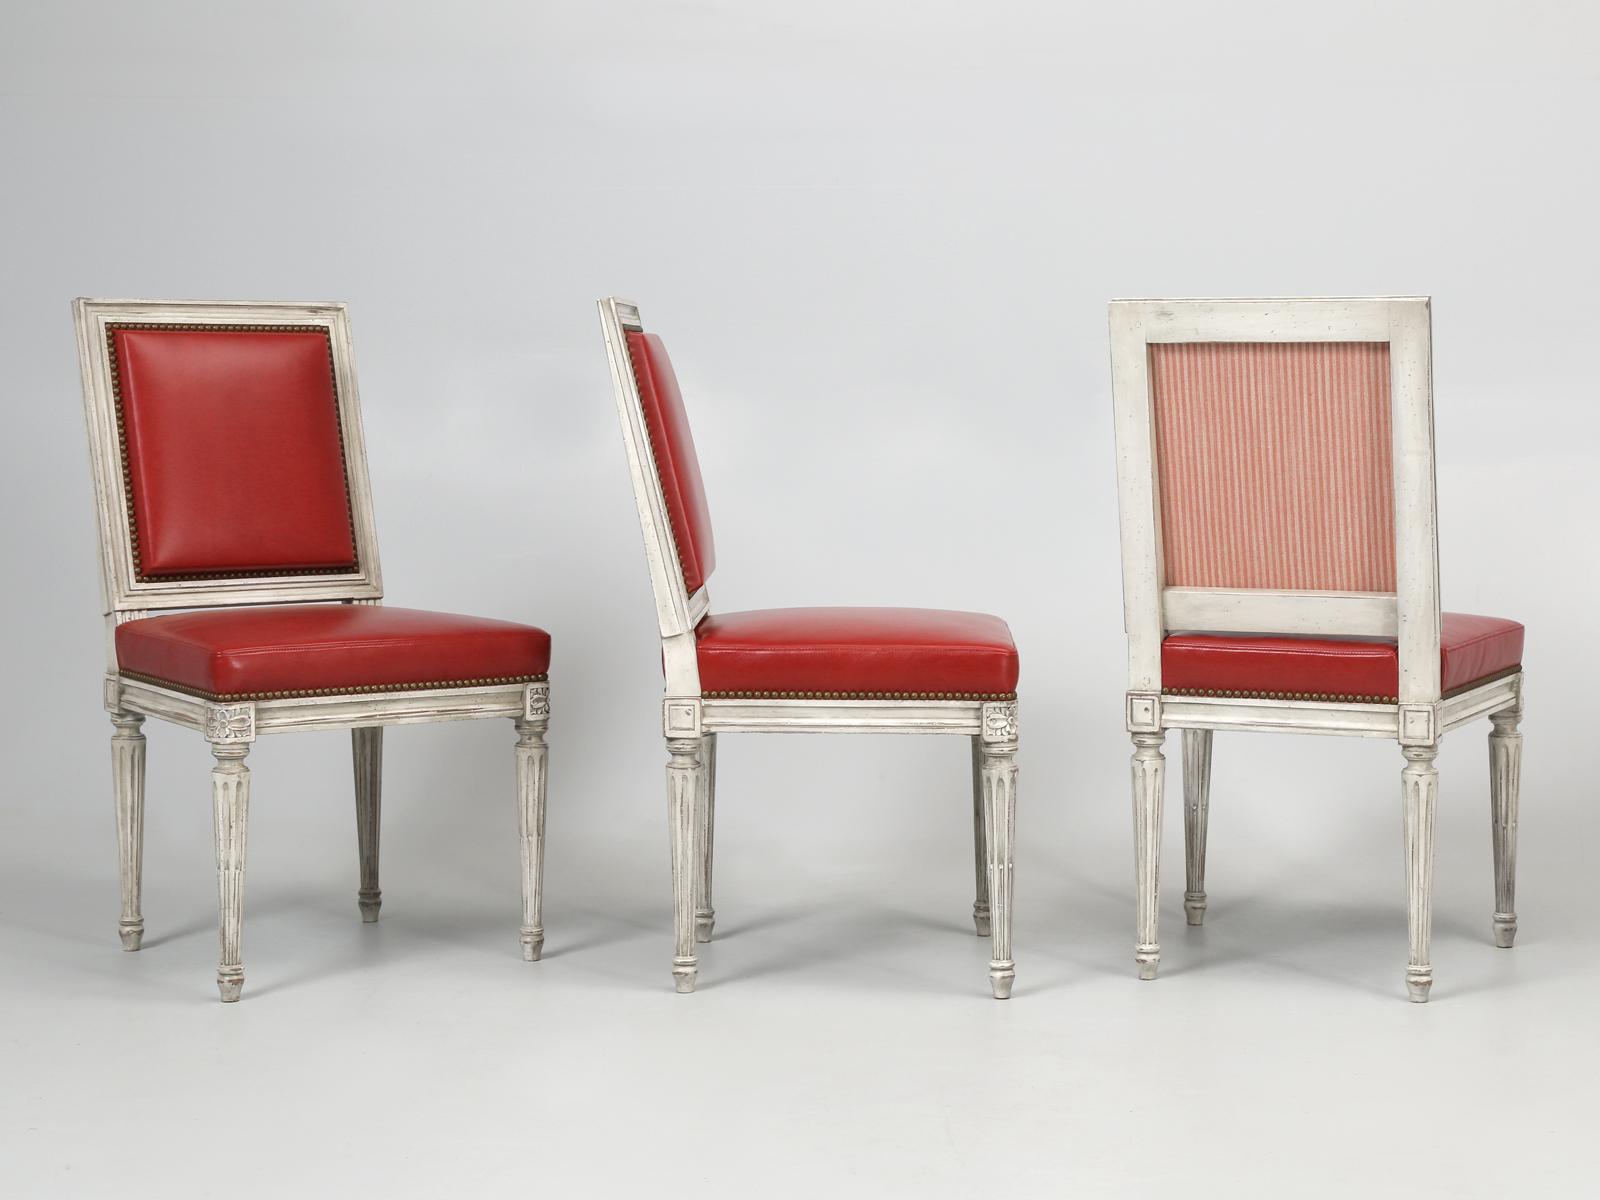 Bien que ces chaises de salle à manger Louis XVI aient été construites pour un designer spécifique, nous avons pensé qu'elles étaient exceptionnelles et avons choisi de présenter les chaises de salle à manger Louis XVI dans un cuir rouge brillant.